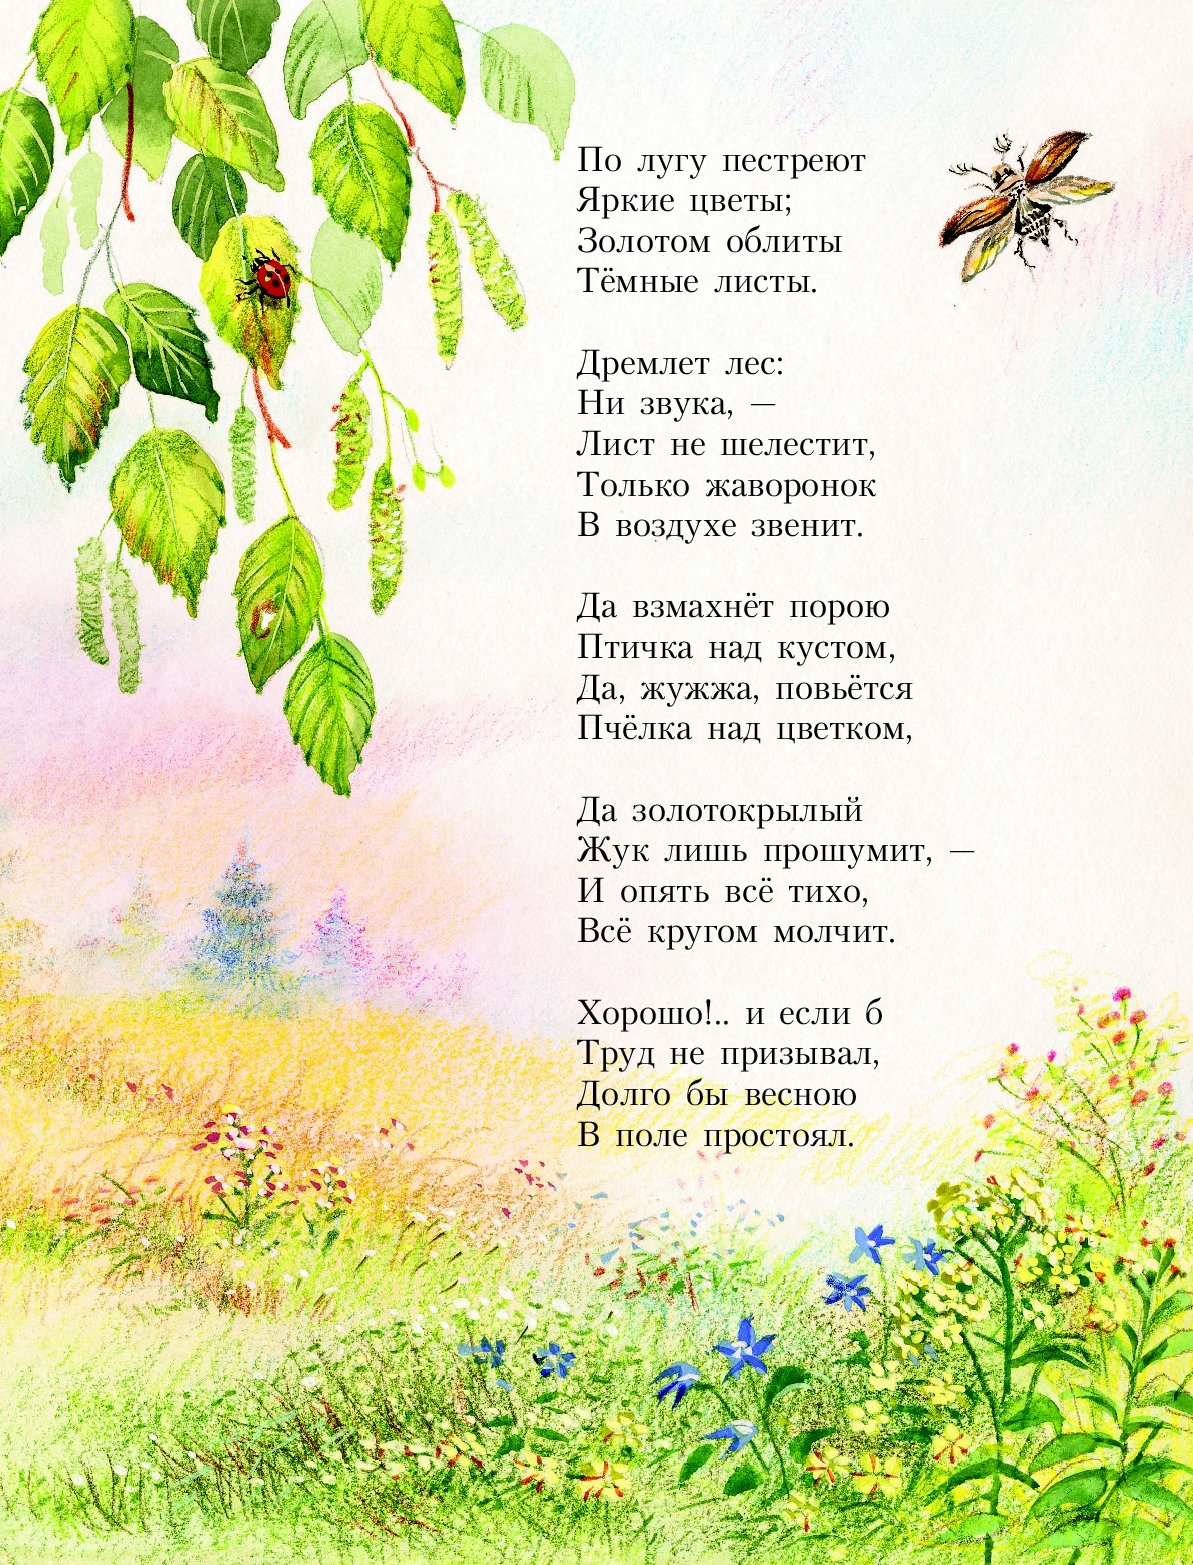 И суриков лето стихотворение. Стихи. Стихи Ивана Сурикова. Стихи про лето русских поэтов.